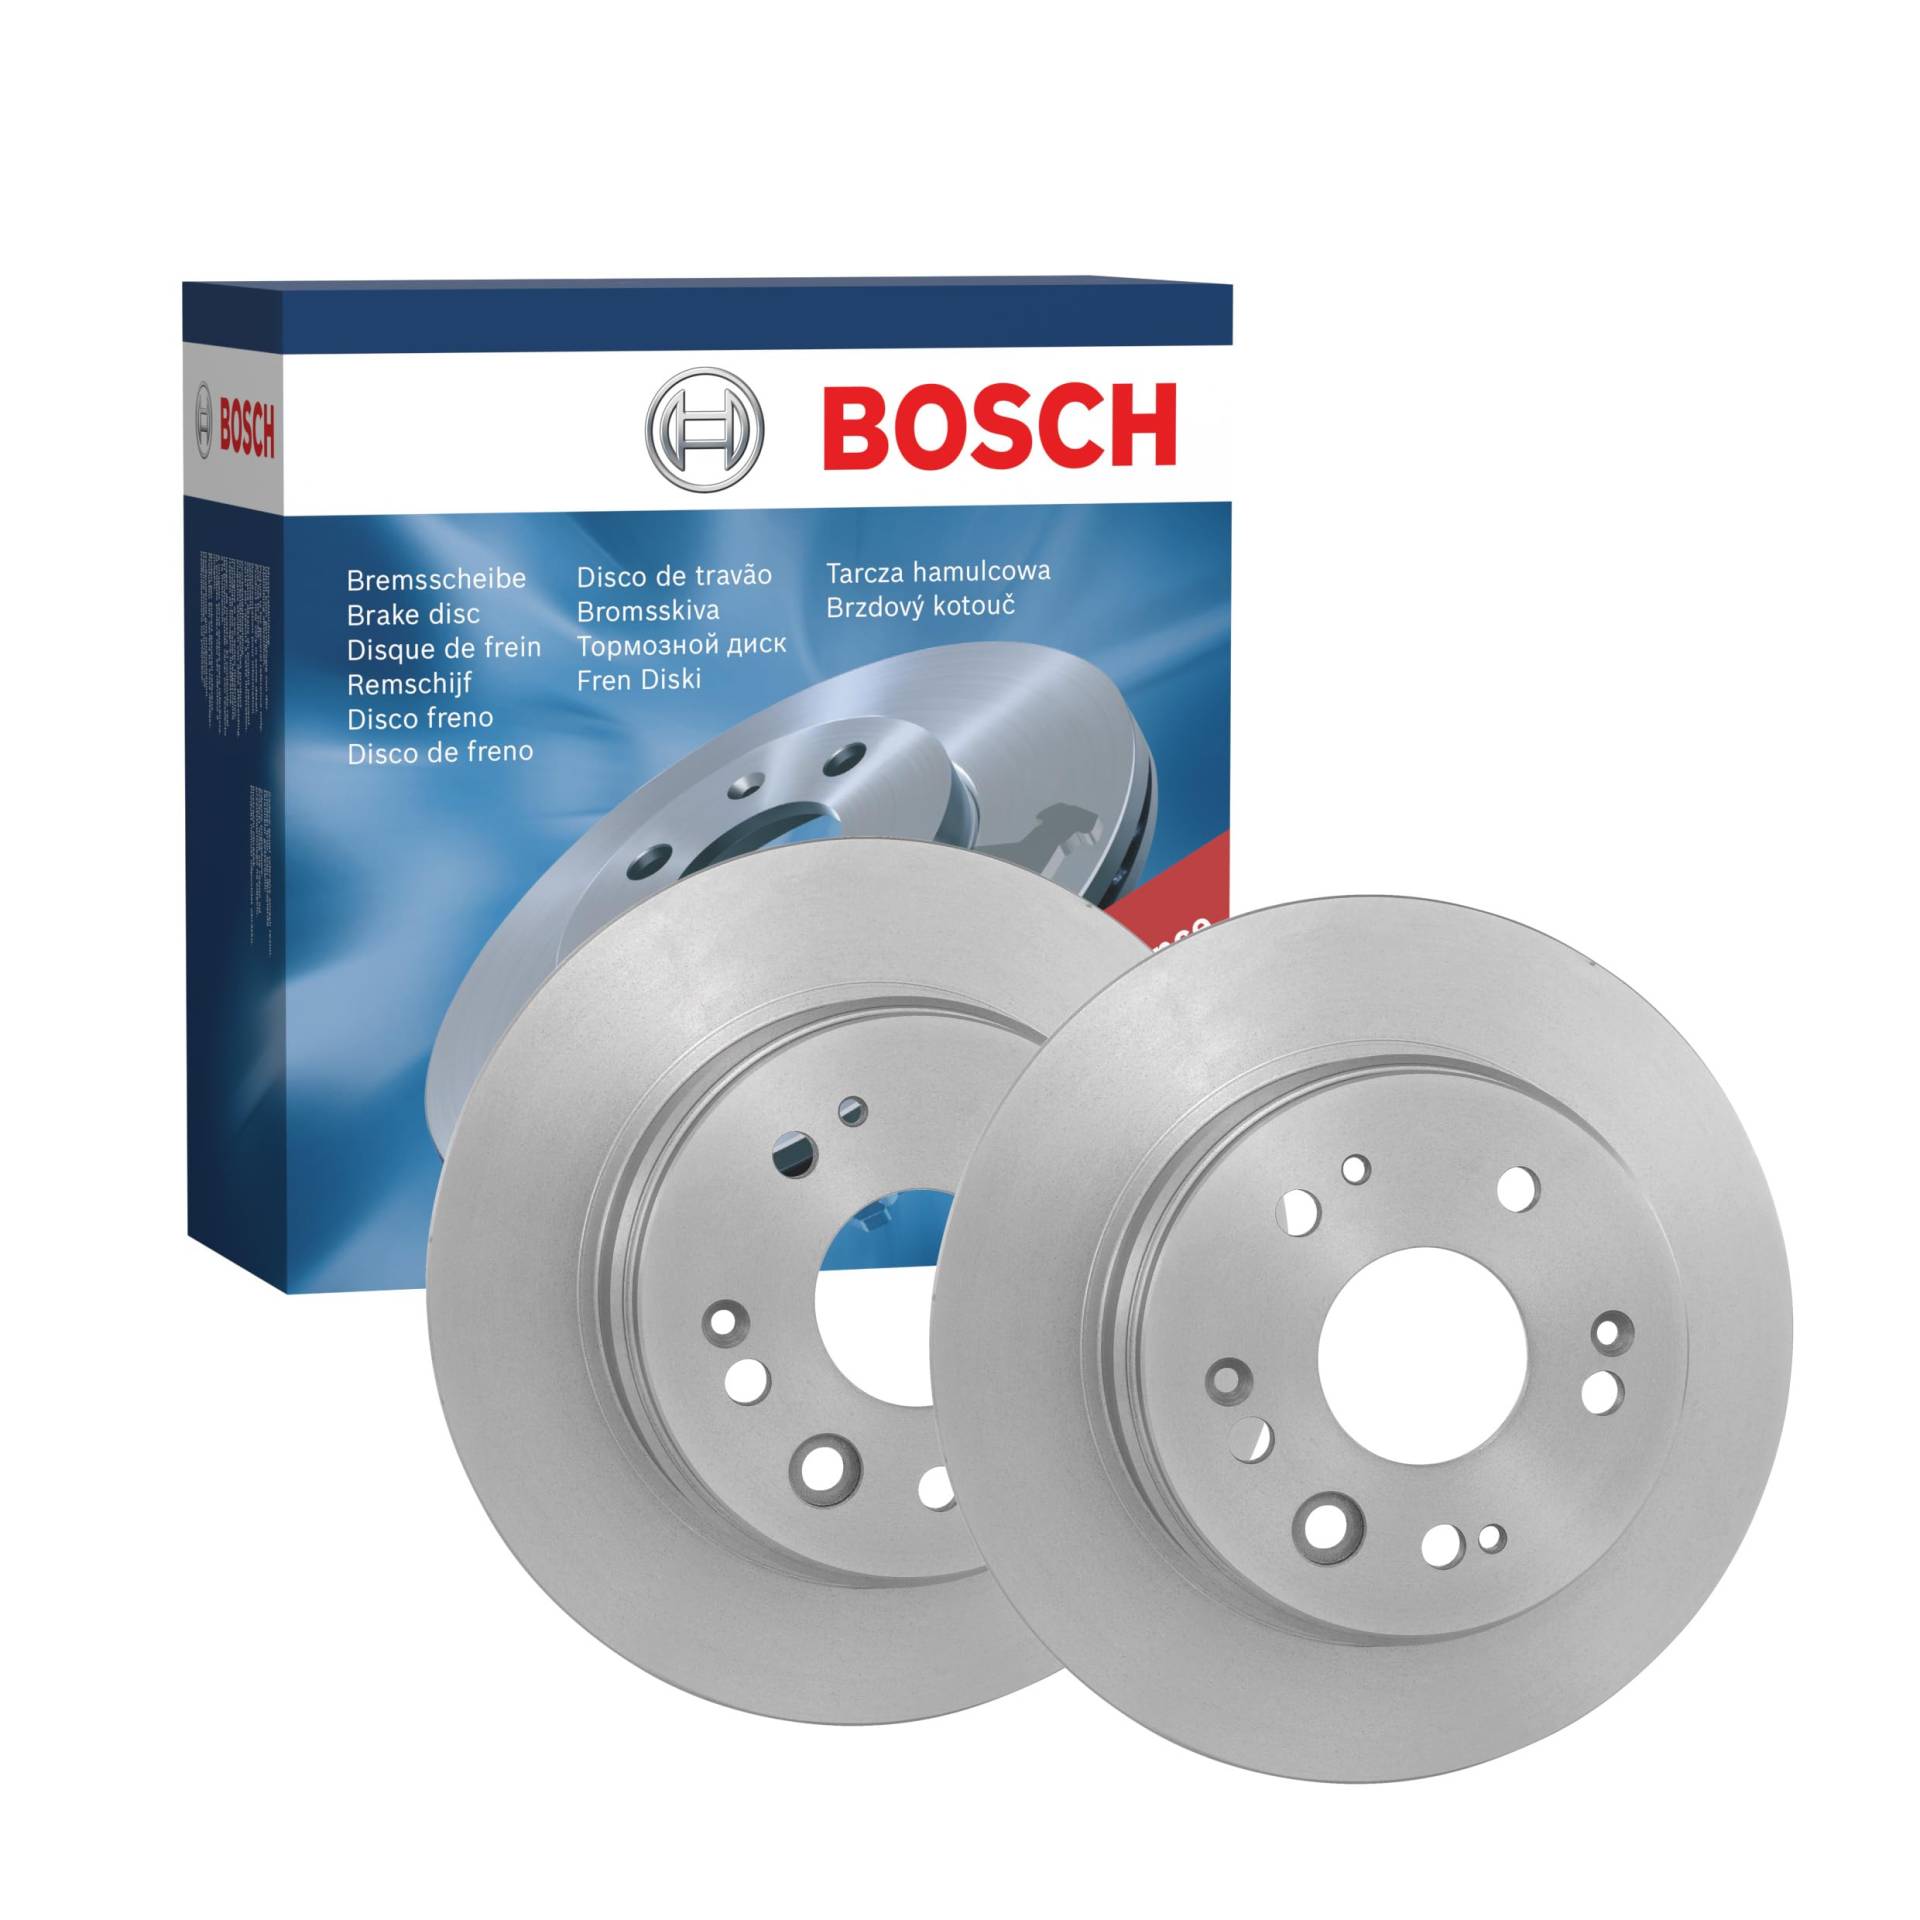 Bosch BD1361 Bremsscheiben - Hinterachse - ECE-R90 Zertifizierung - zwei Bremsscheiben pro Set von Bosch Automotive